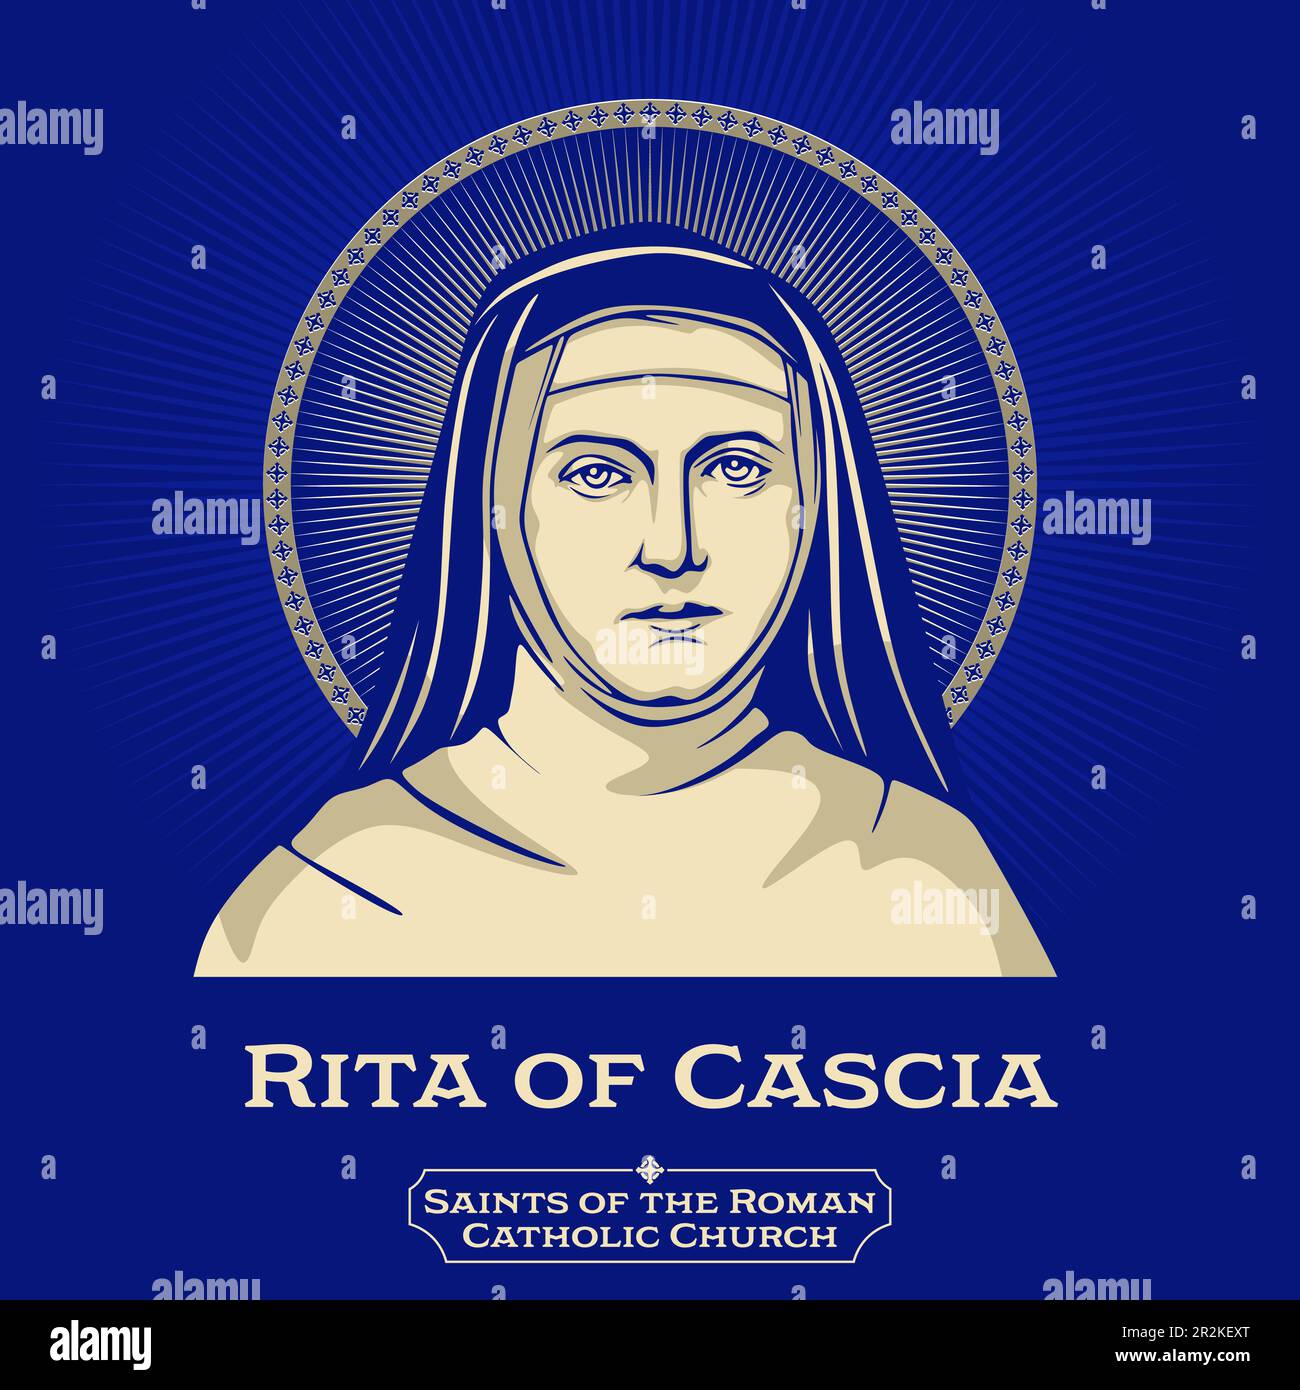 Saints catholiques. Rita de Cascia (1381-1457) était une veuve italienne et une religieuse Augustininienne vénérée comme saint dans l'Église catholique romaine. Illustration de Vecteur